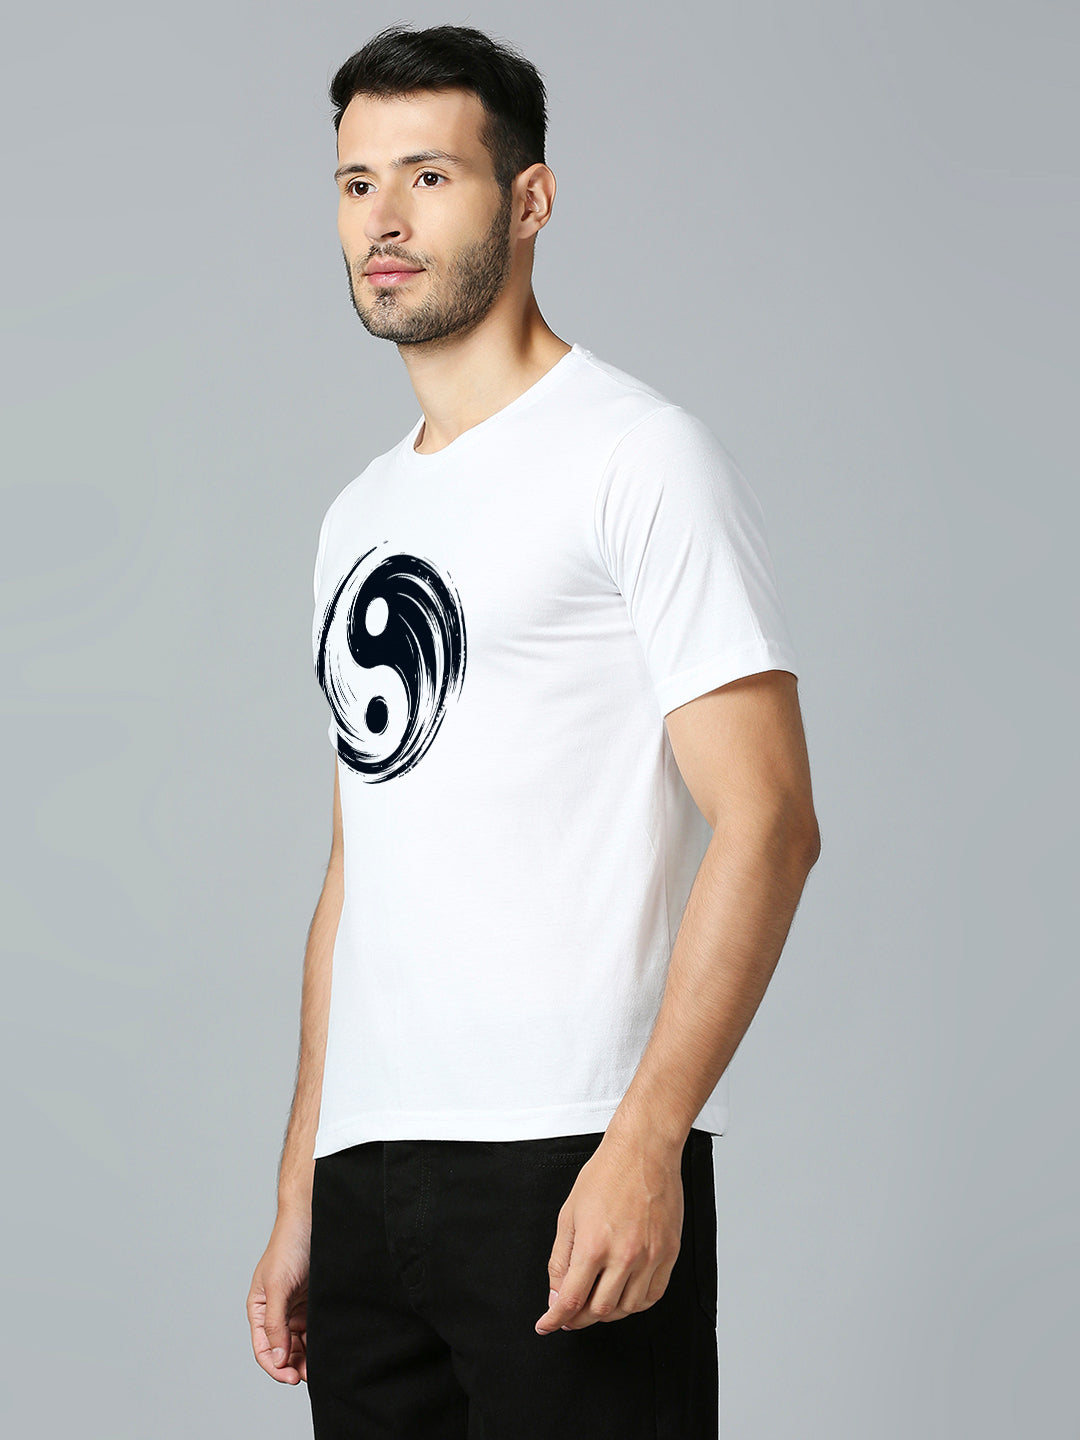 Yin Yang T-Shirt